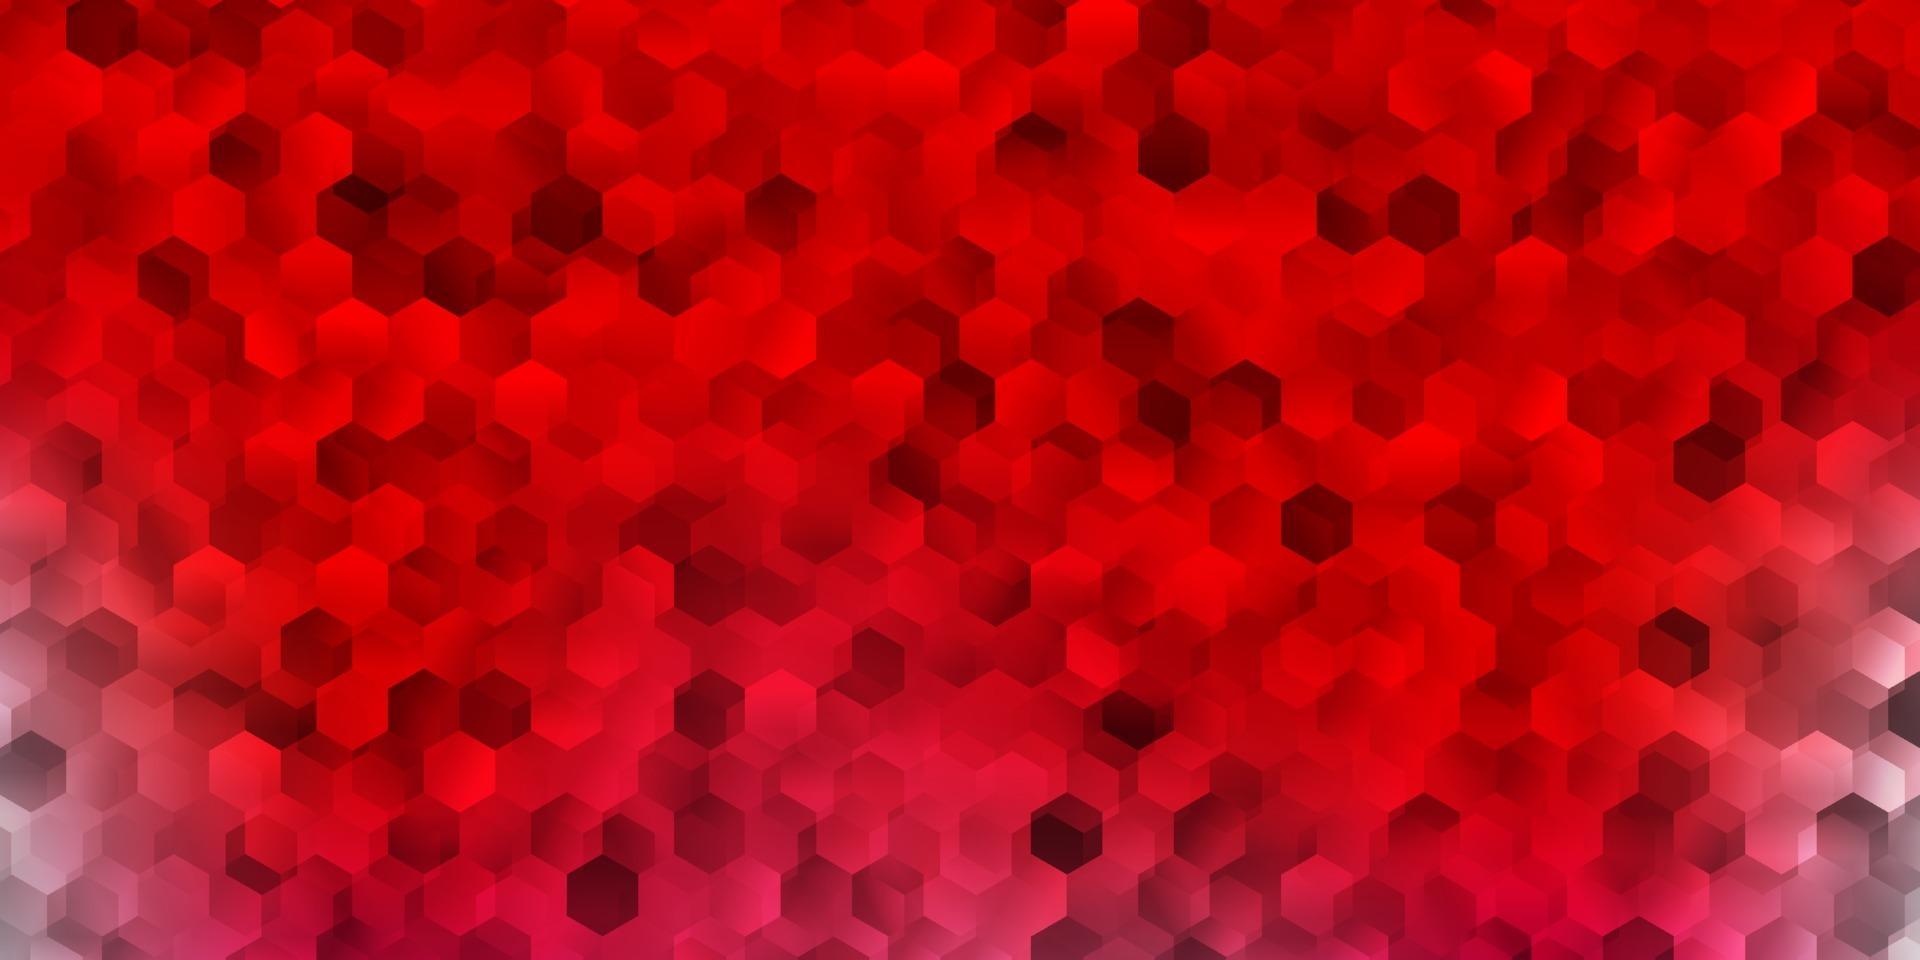 couverture de vecteur rouge clair avec des hexagones simples.